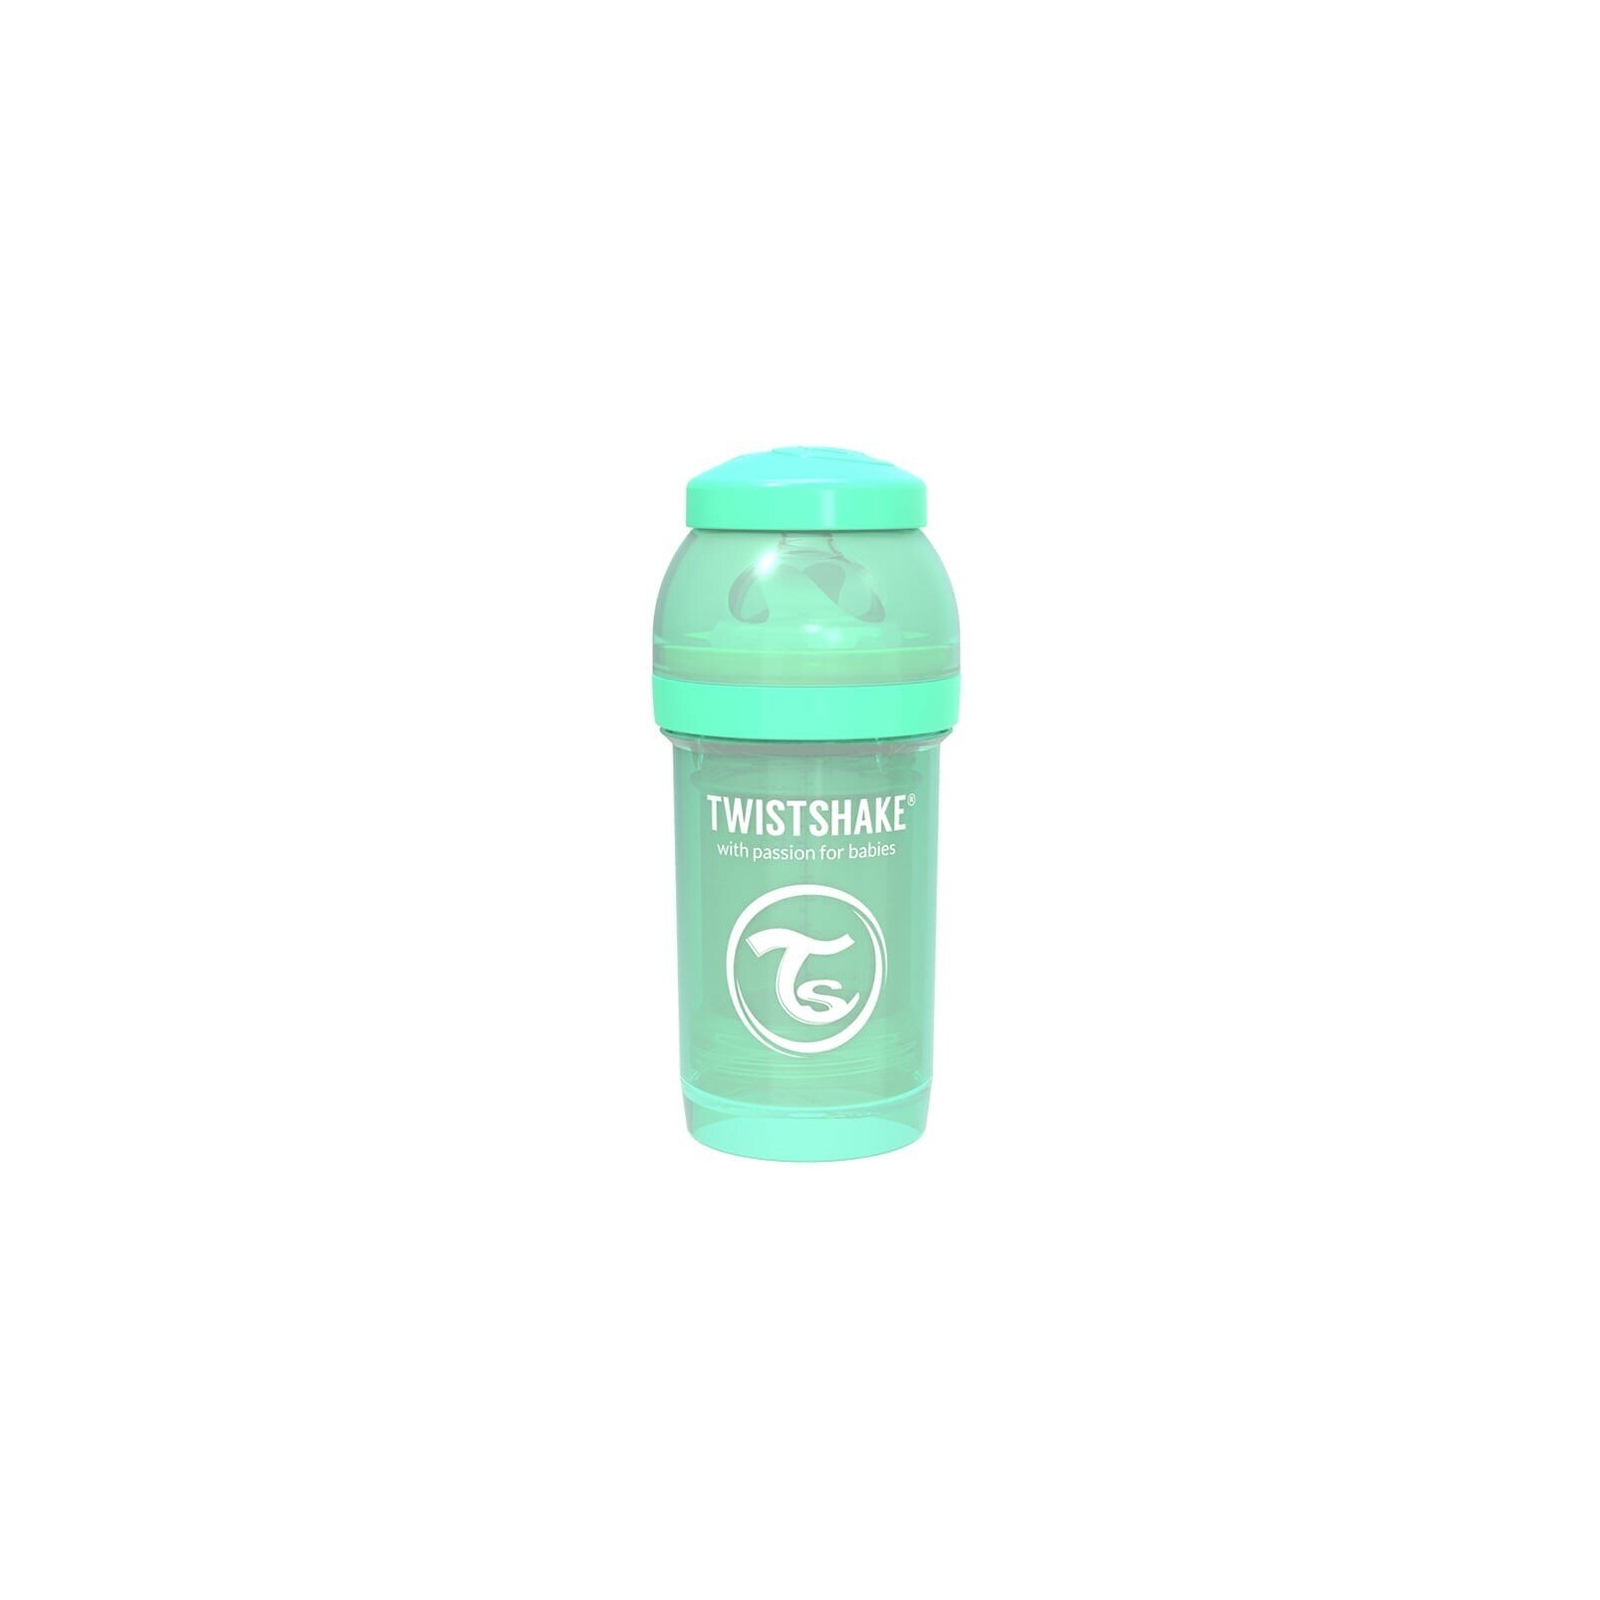 Бутылочка для кормления Twistshake антиколиковая 180мл, светло-голубая (69857/78250)